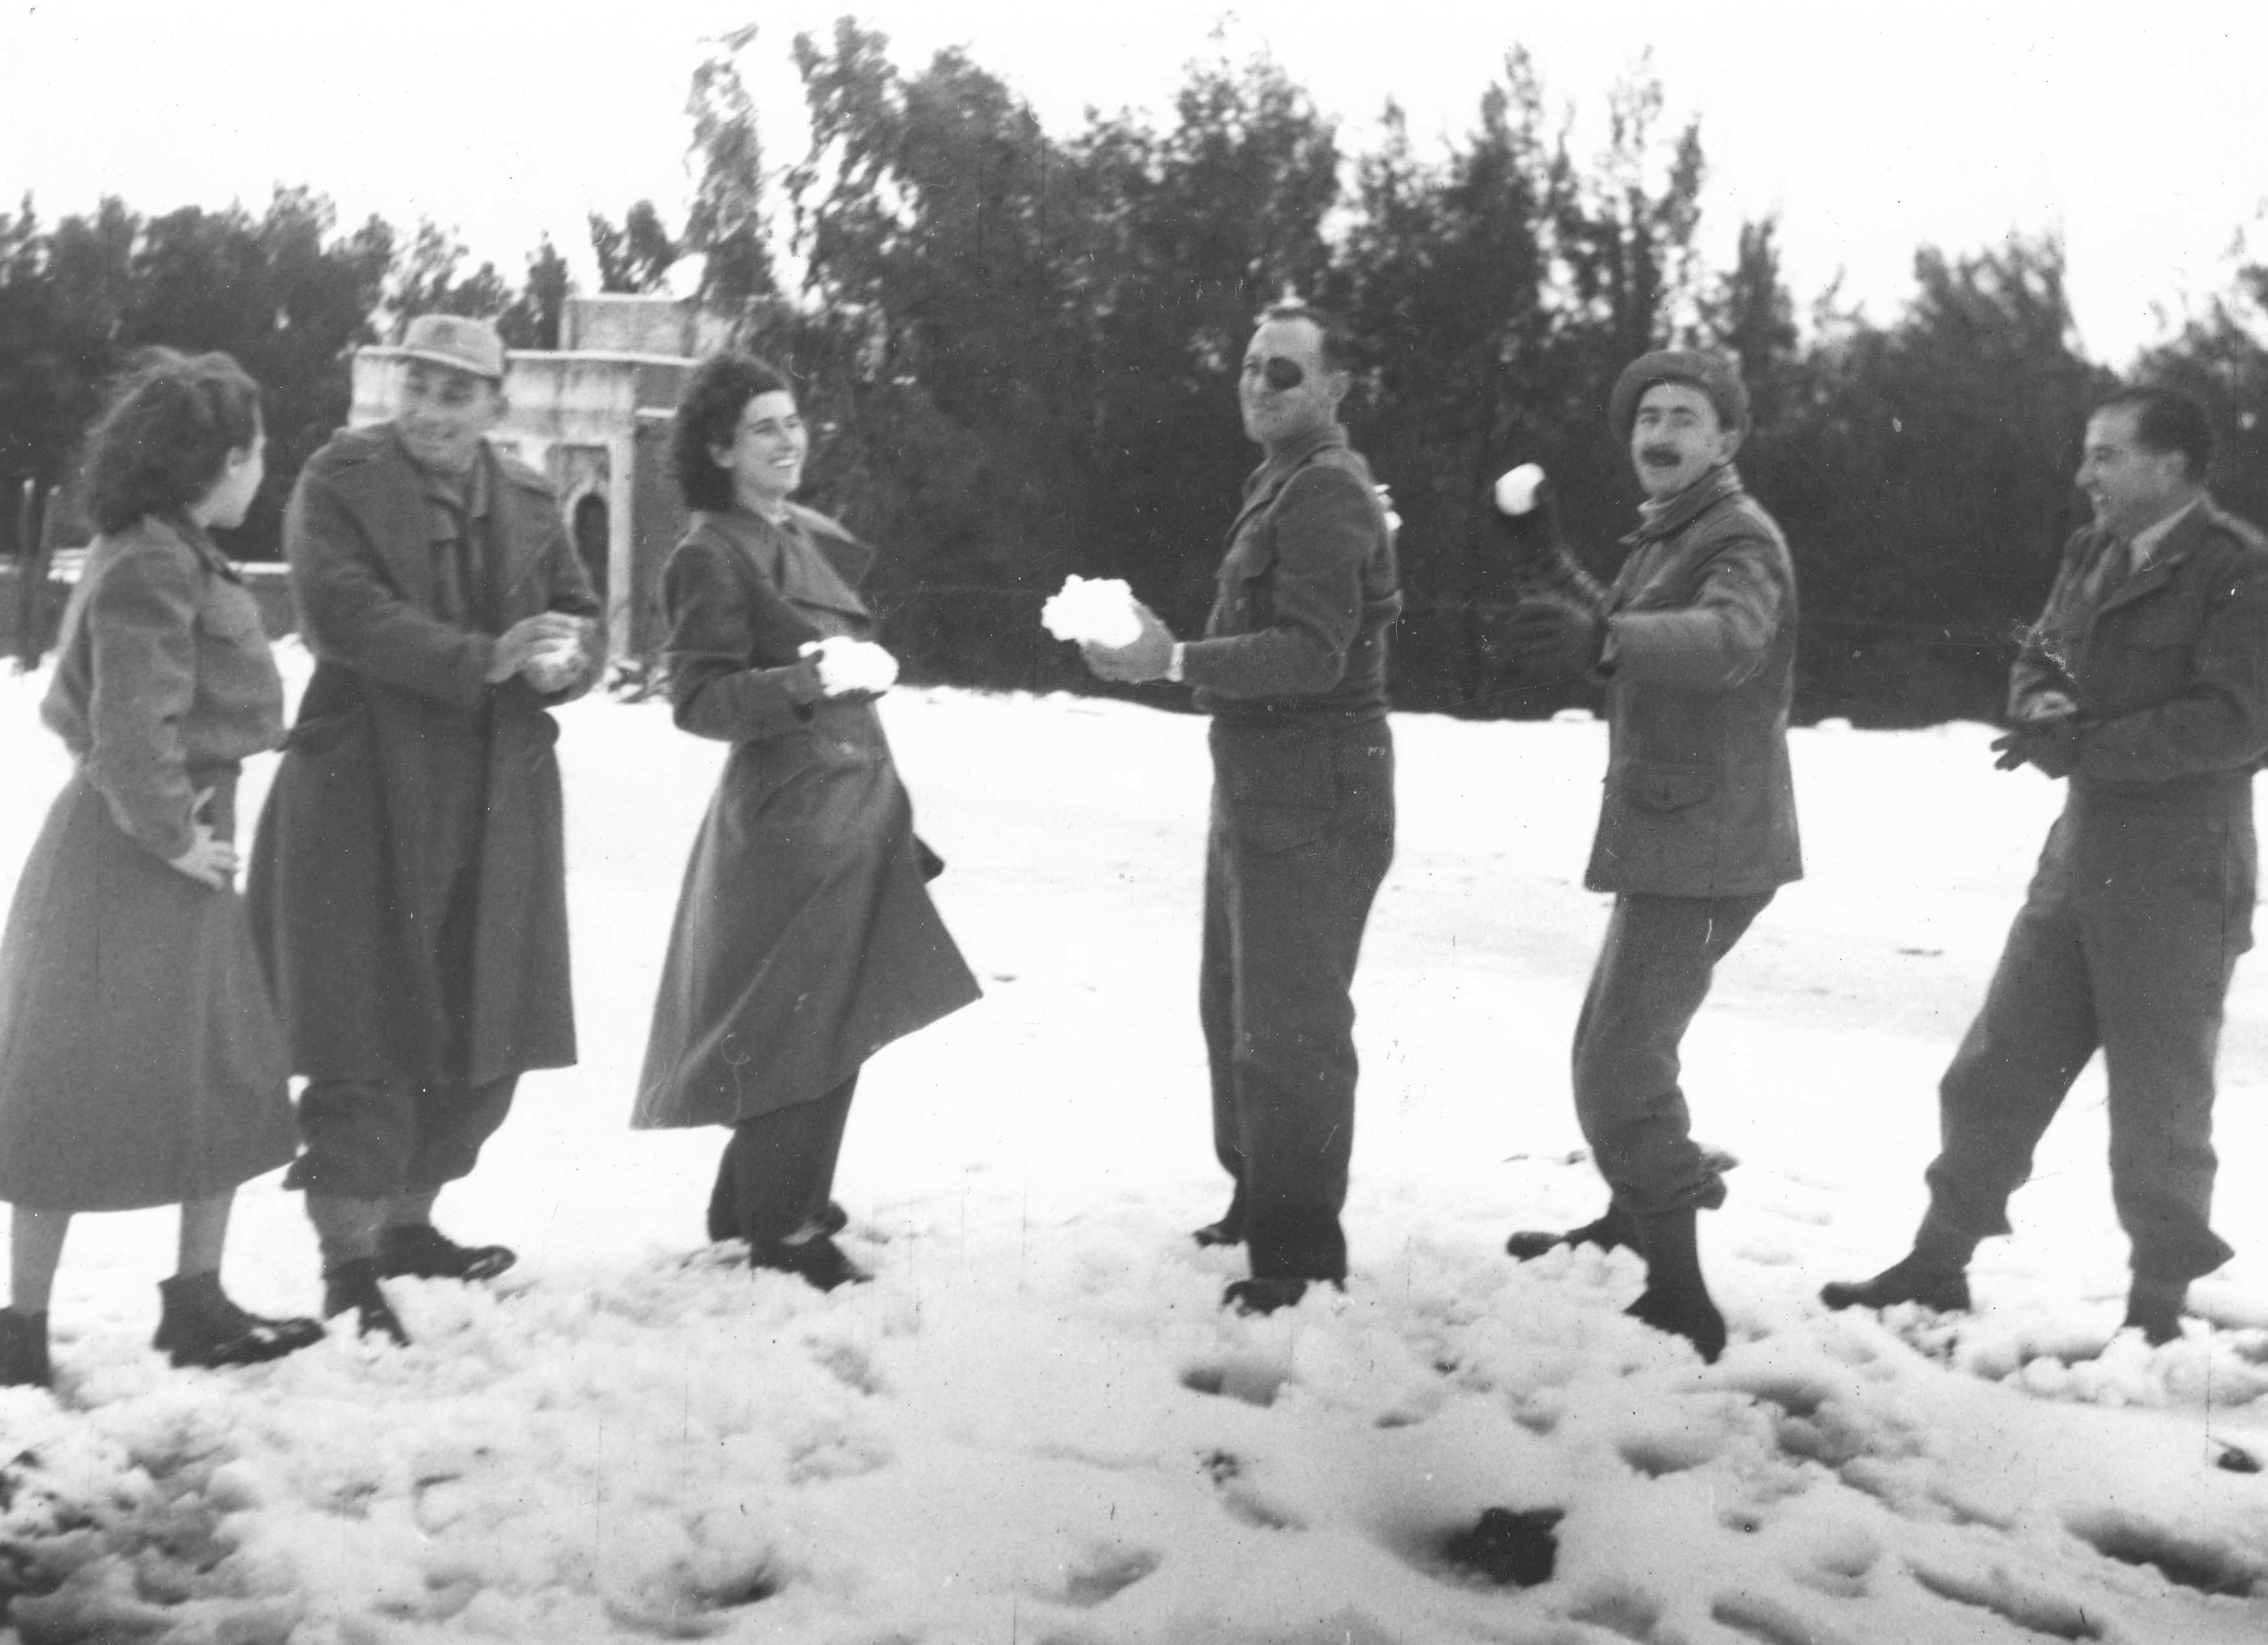 Throwing Snowballs, 1949